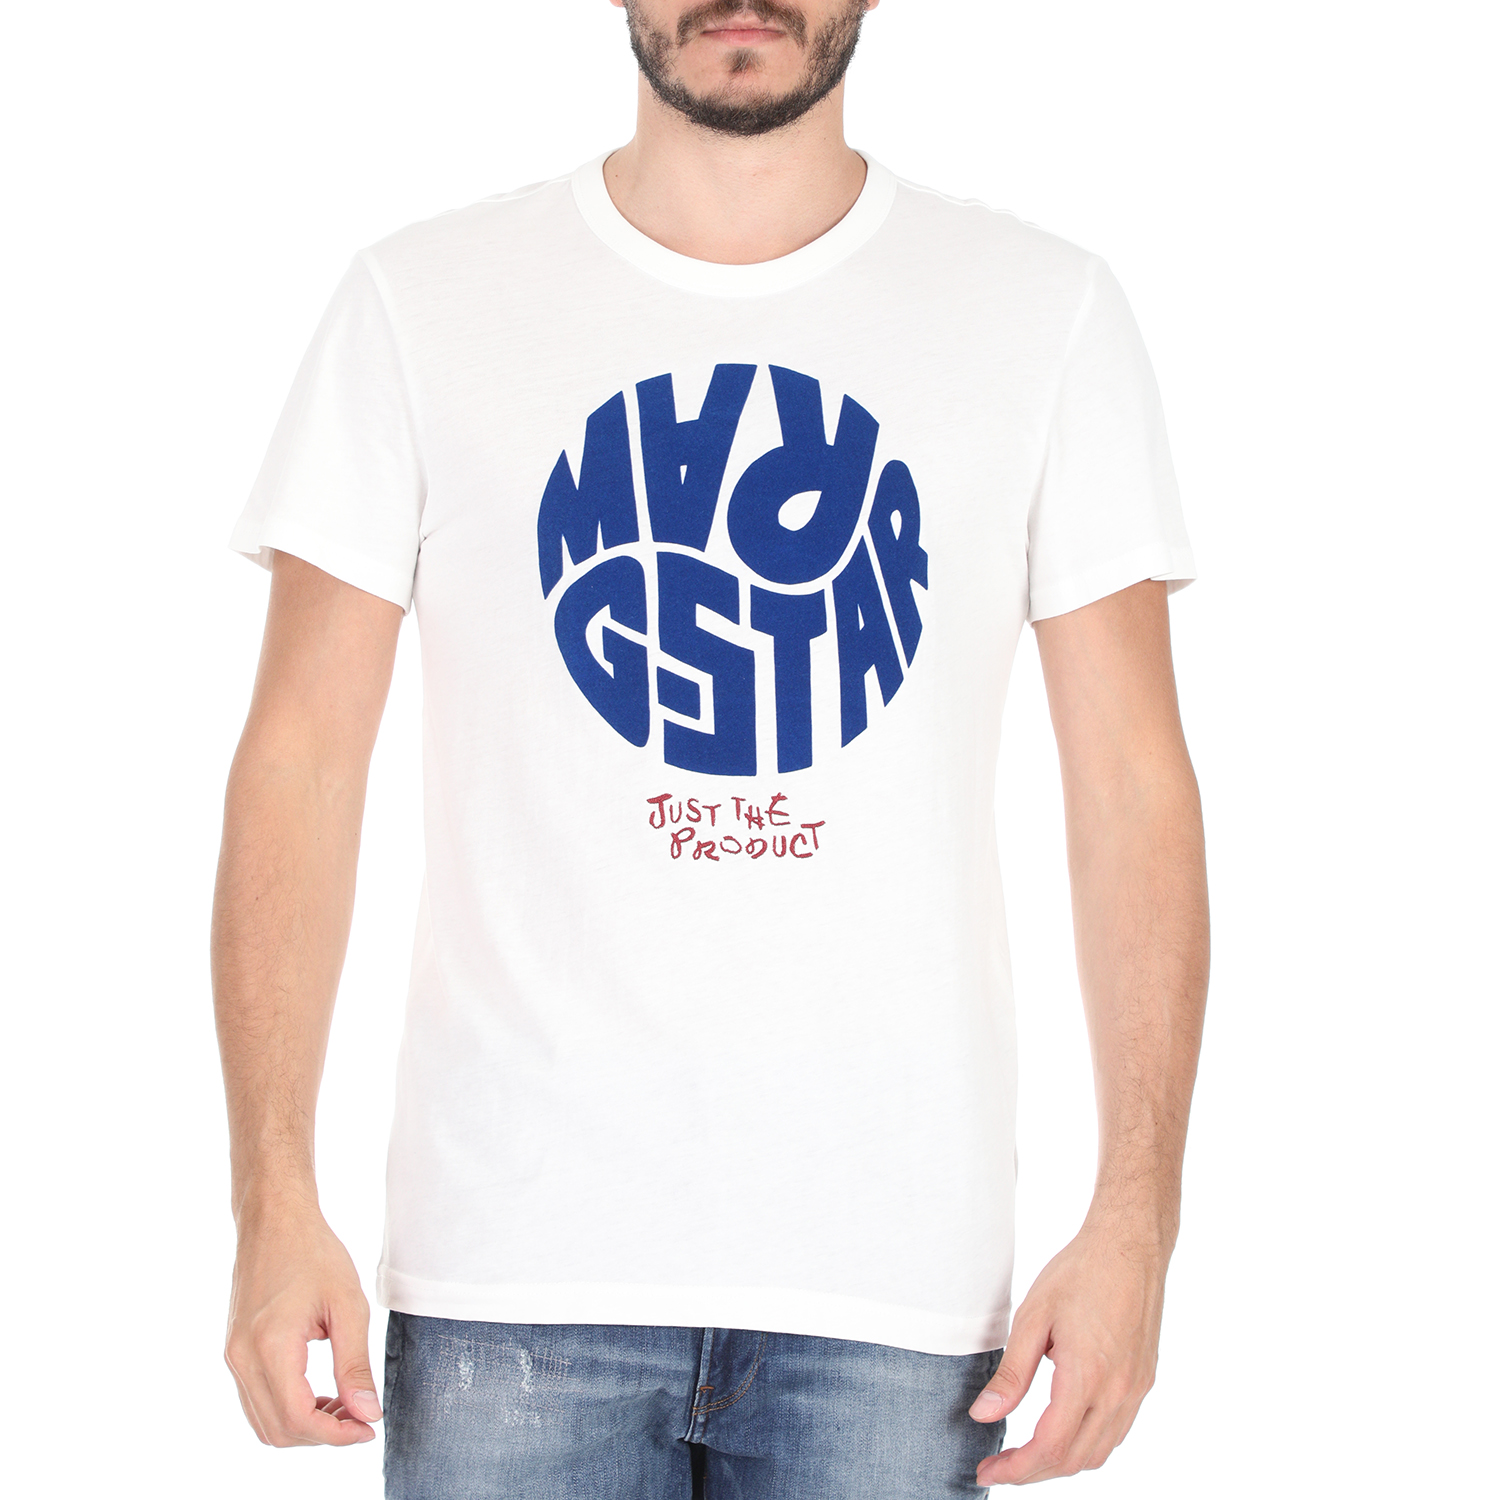 Ανδρικά/Ρούχα/Μπλούζες/Κοντομάνικες G-STAR RAW - Ανδρικό t-shirt G-STAR RAW GRAPHIC 6 R T SS λευκό μπλε